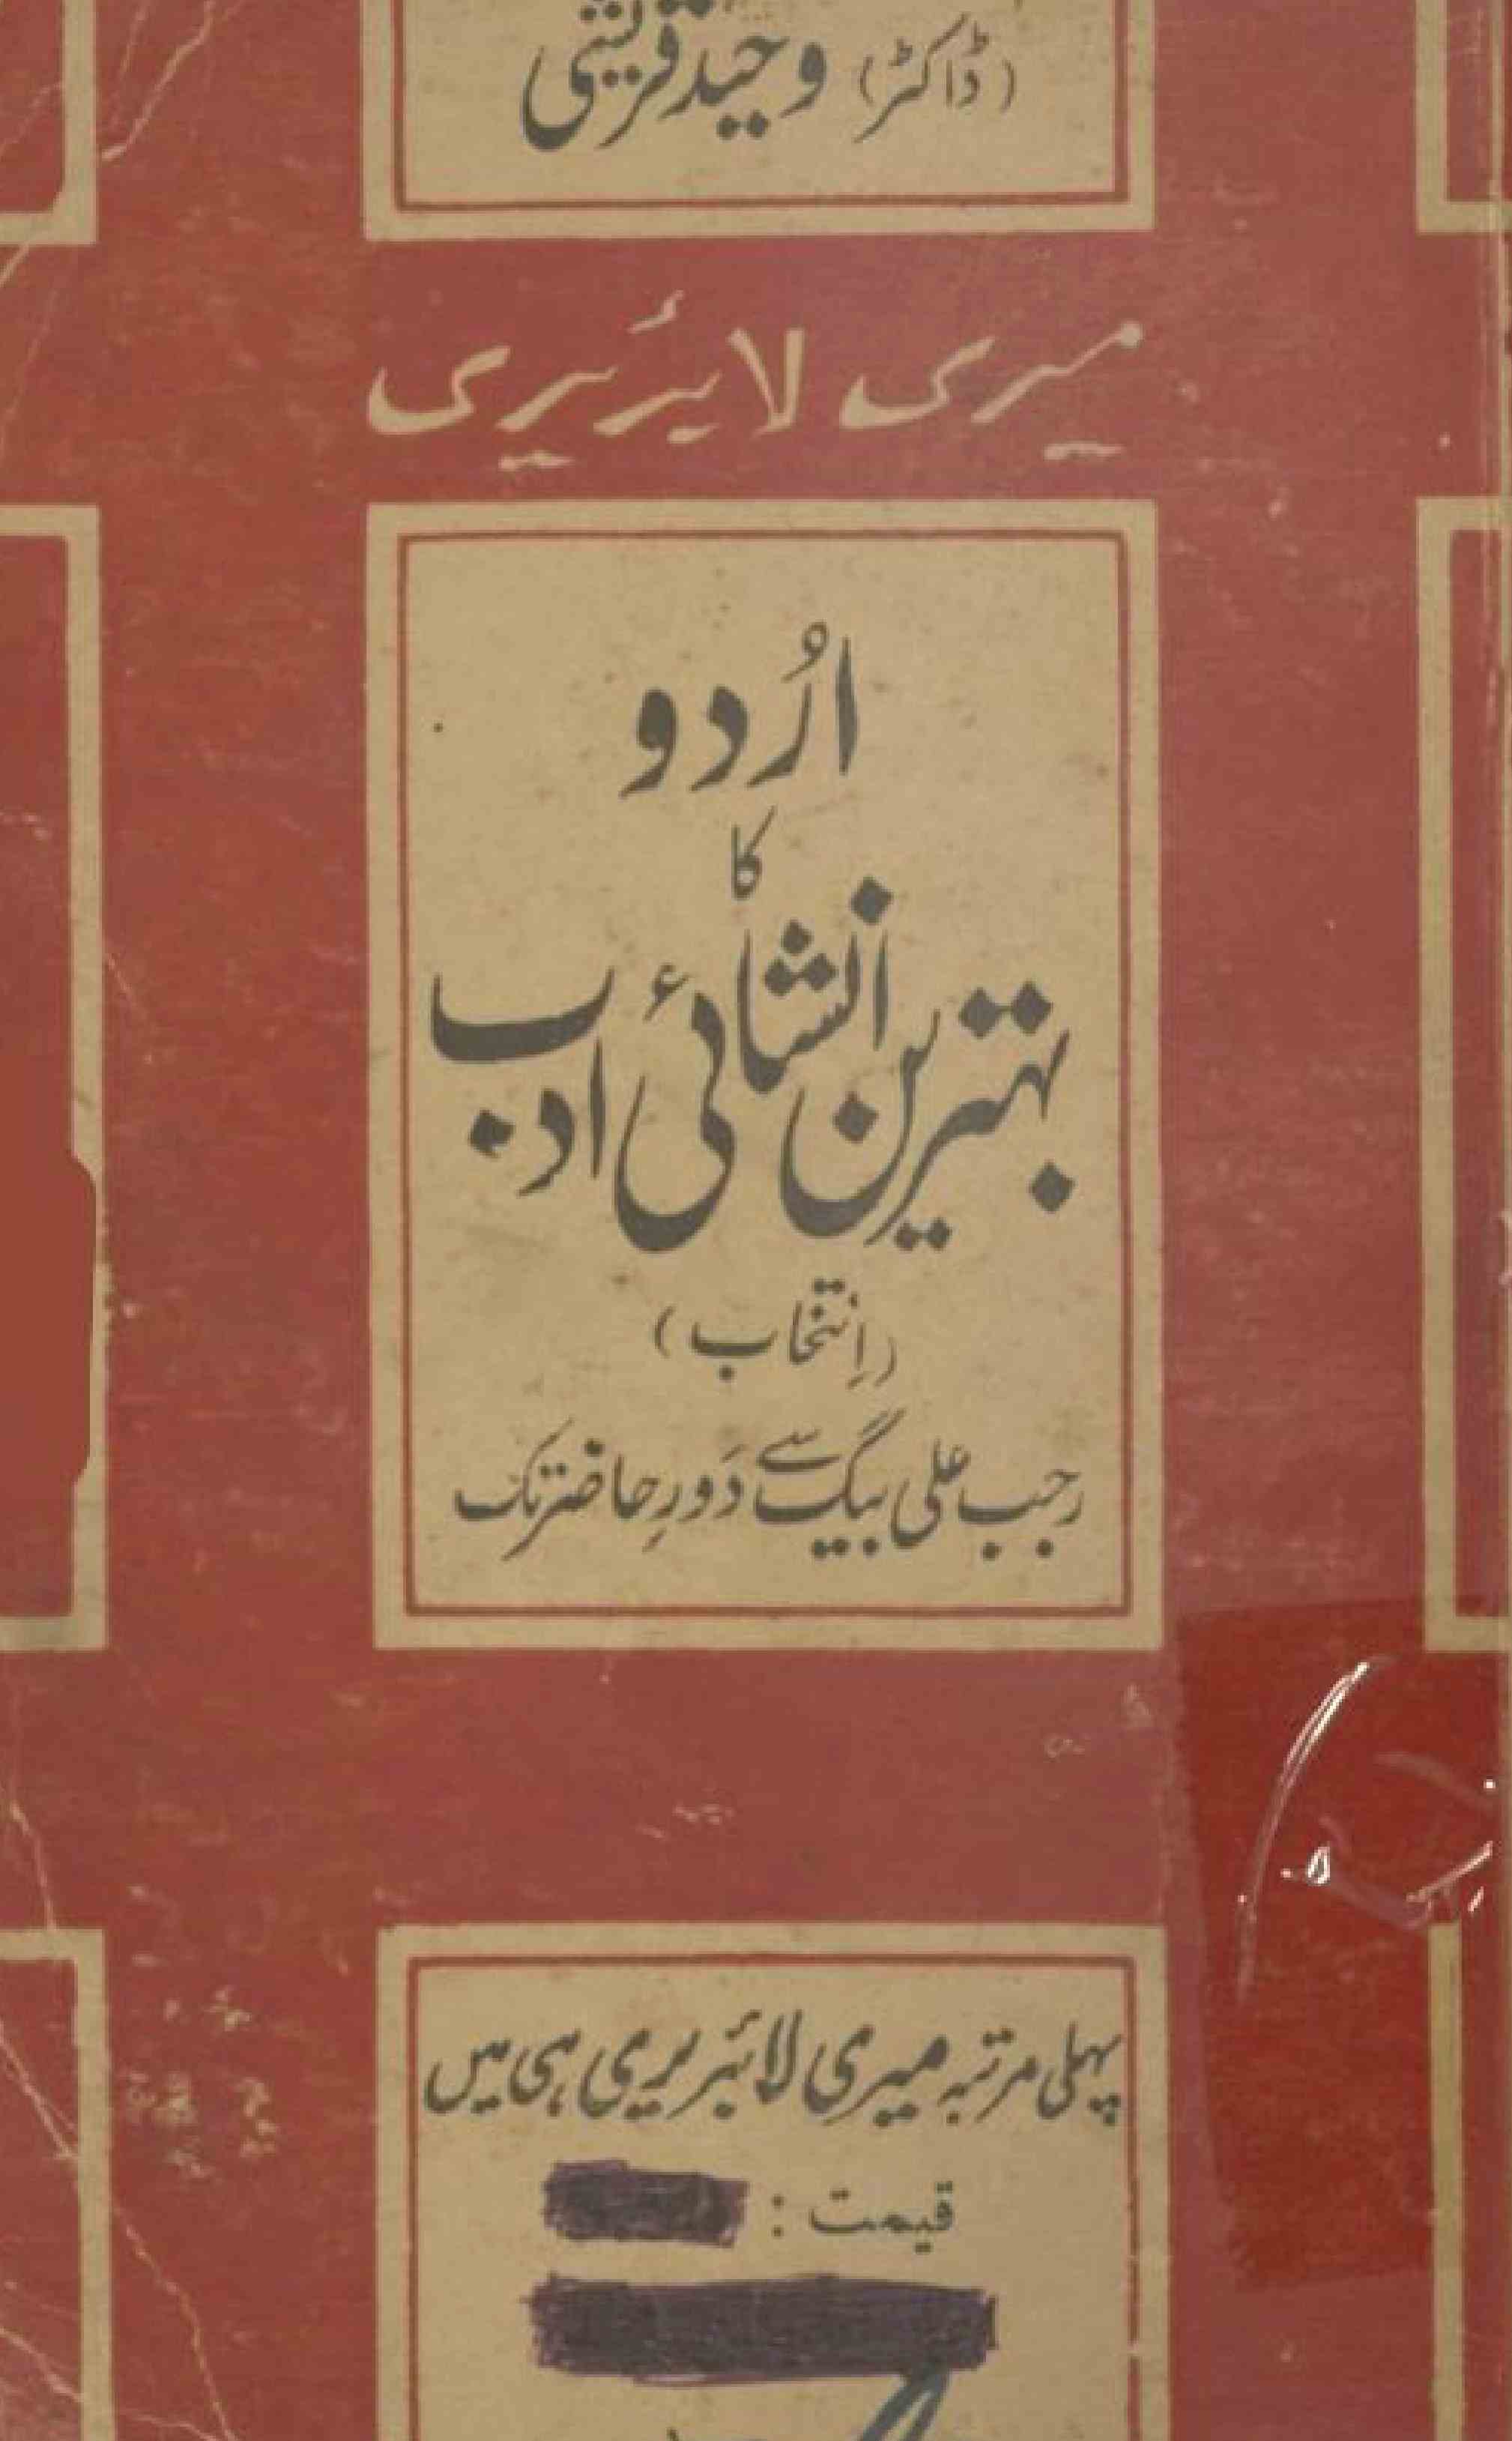 اردو کا بہترین انشائی ادب رجب علی بیگ سے دور حاضر تک